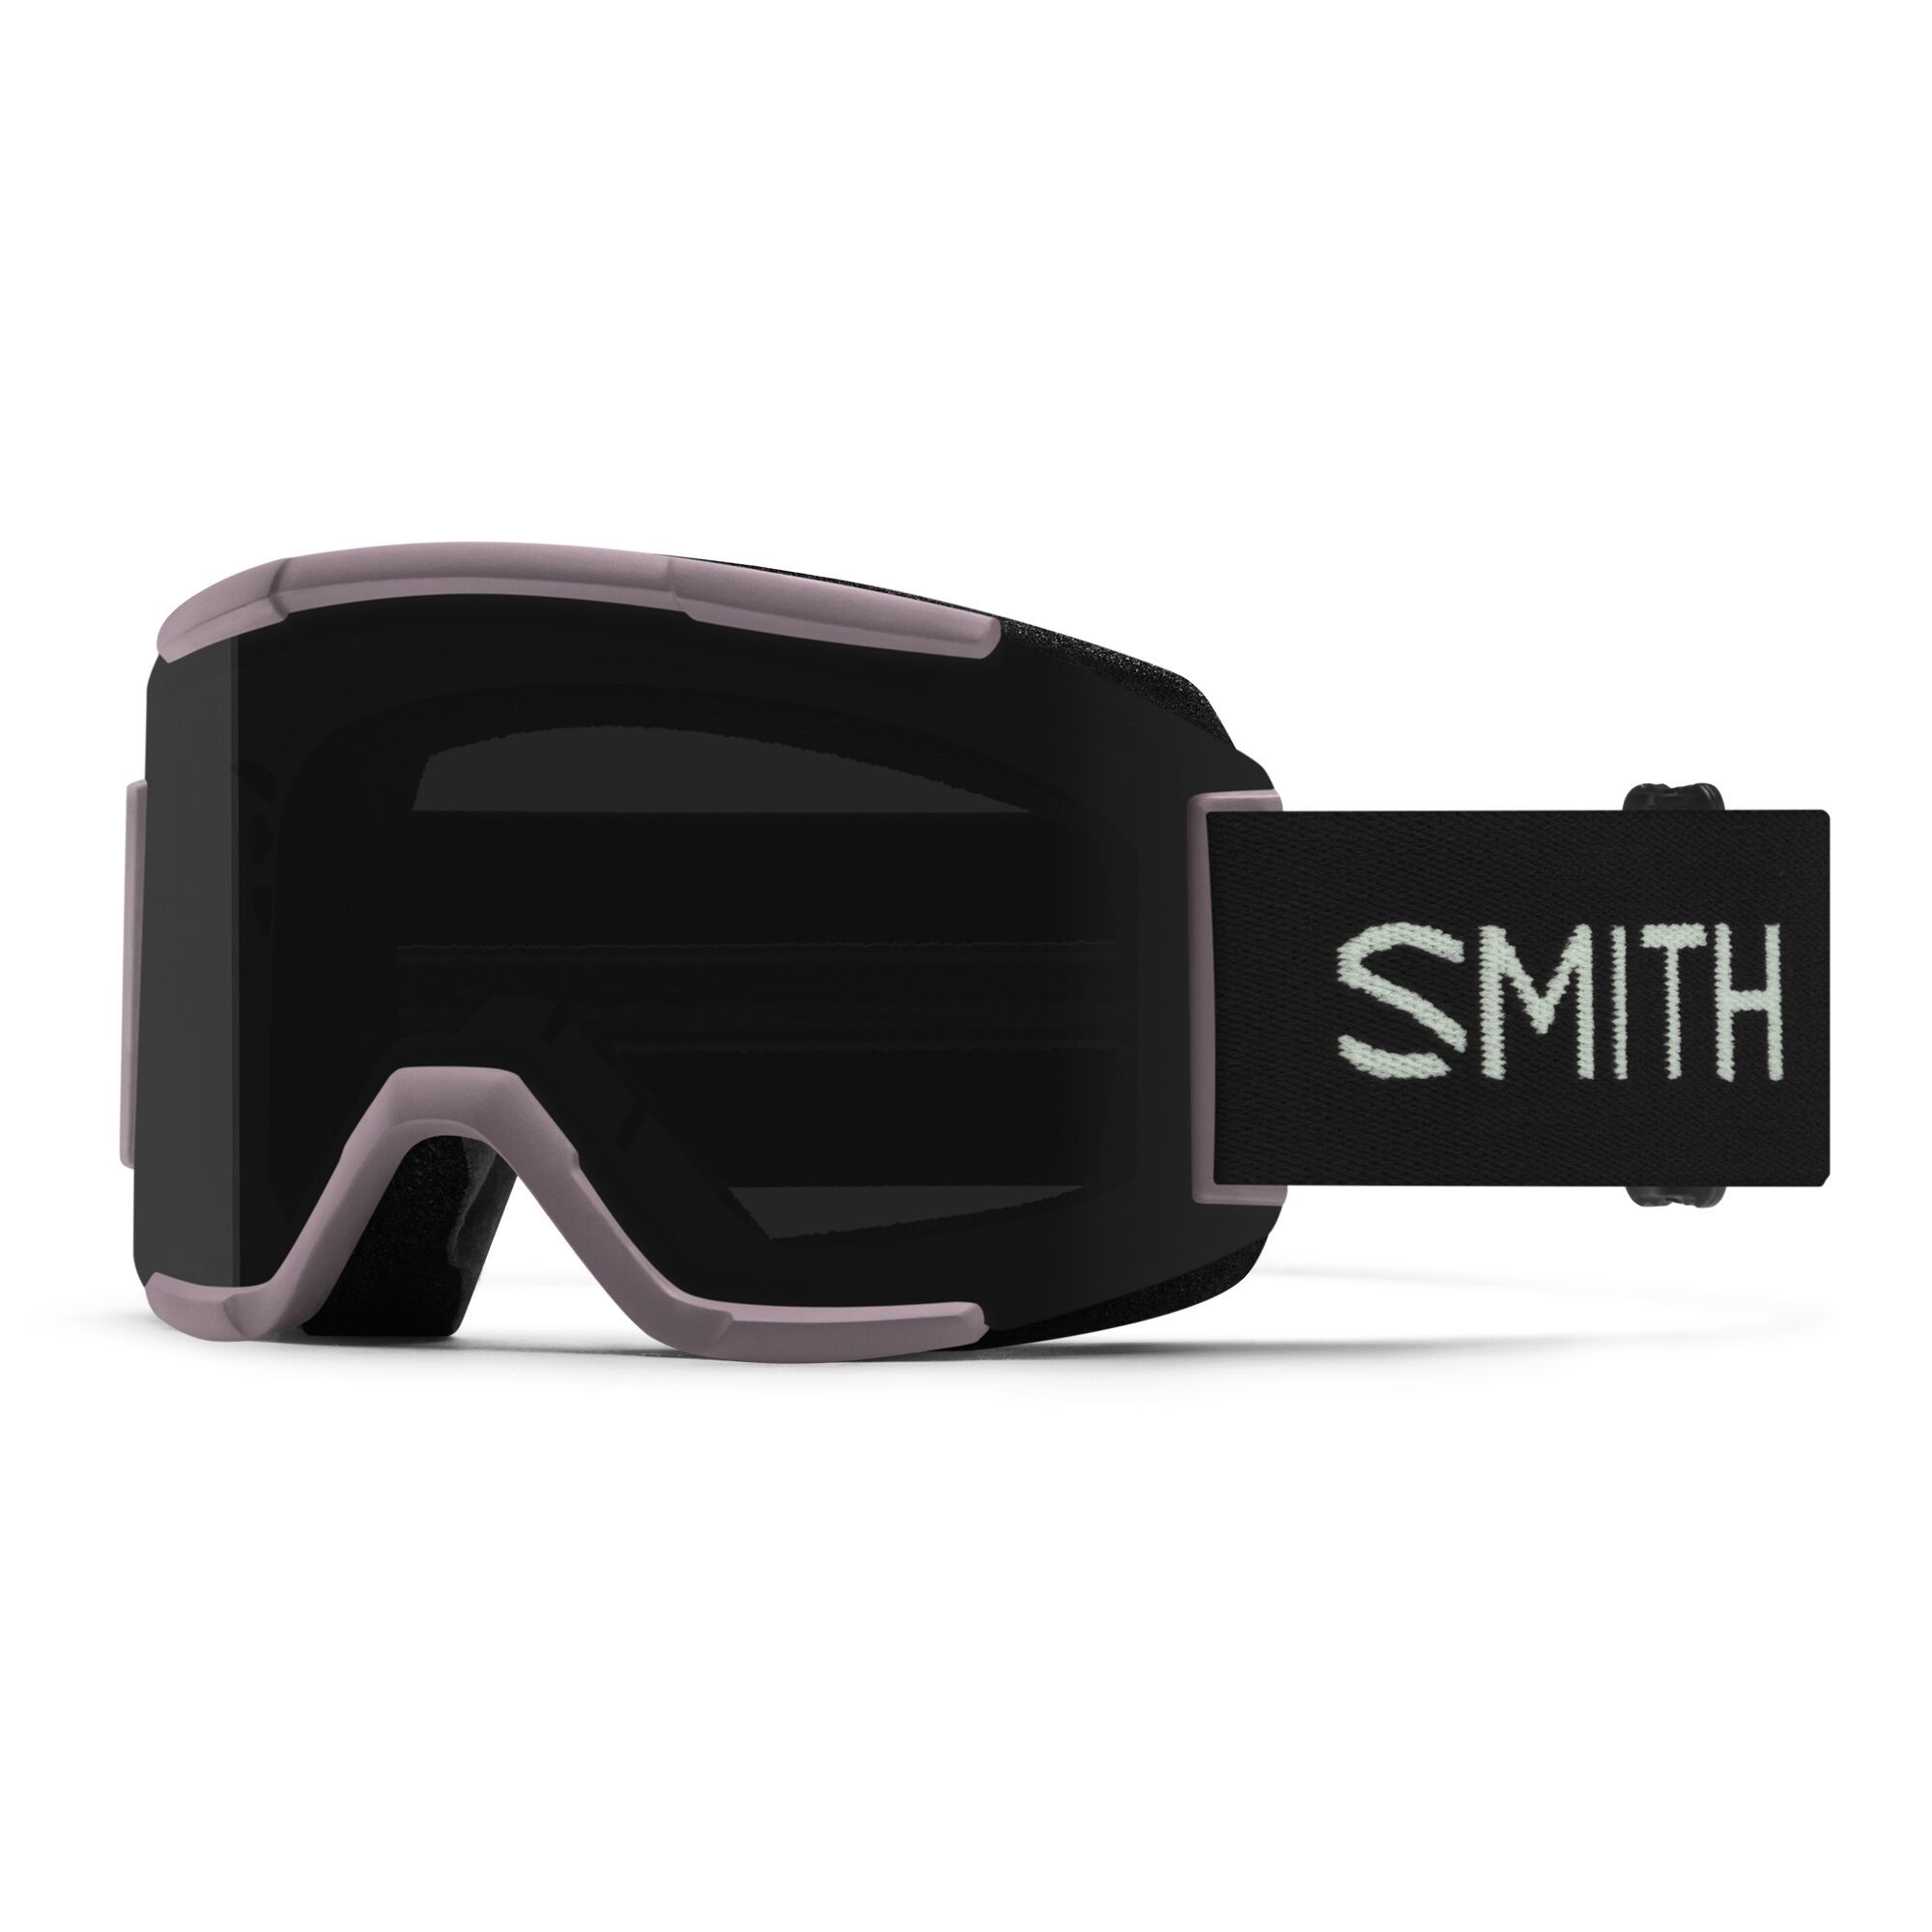 Les masques de ski Smith Chromapop : des masques révolutionnaires.